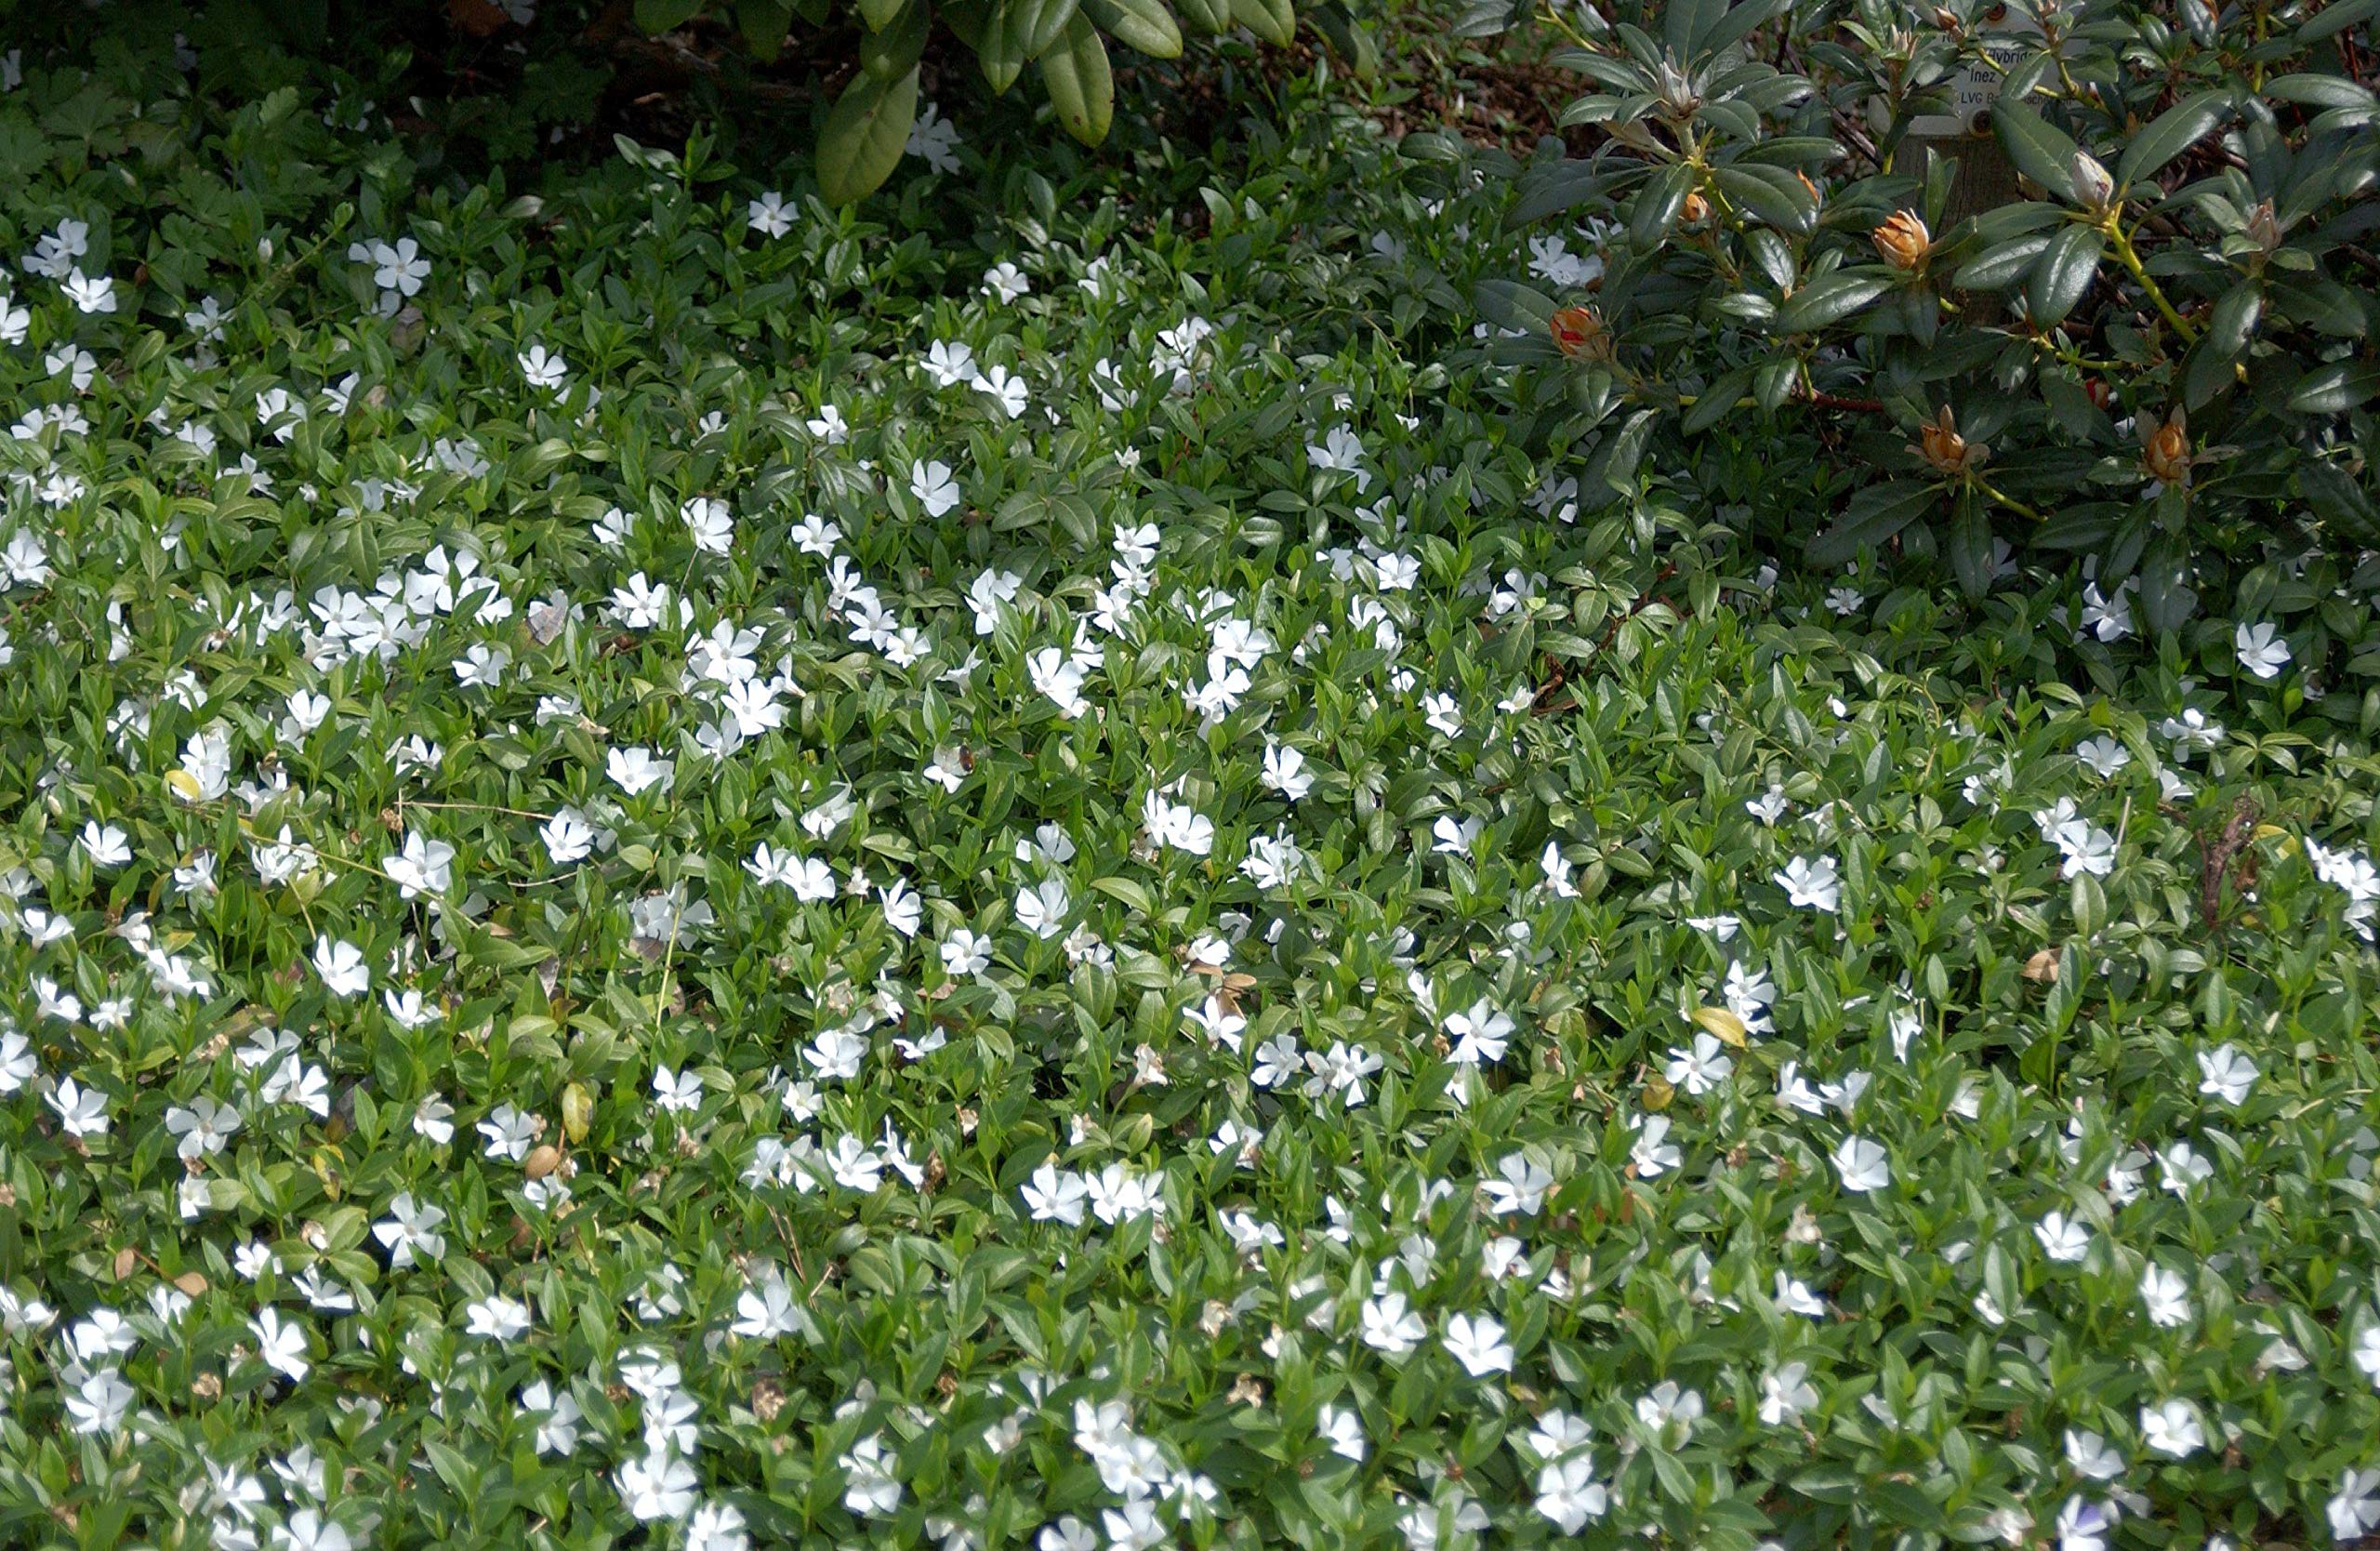 Vinca minor 'Alba' Weißblühendes Immergrün Bodendecker mit weißen Blüten im Topf gewachsen (25 Stück)